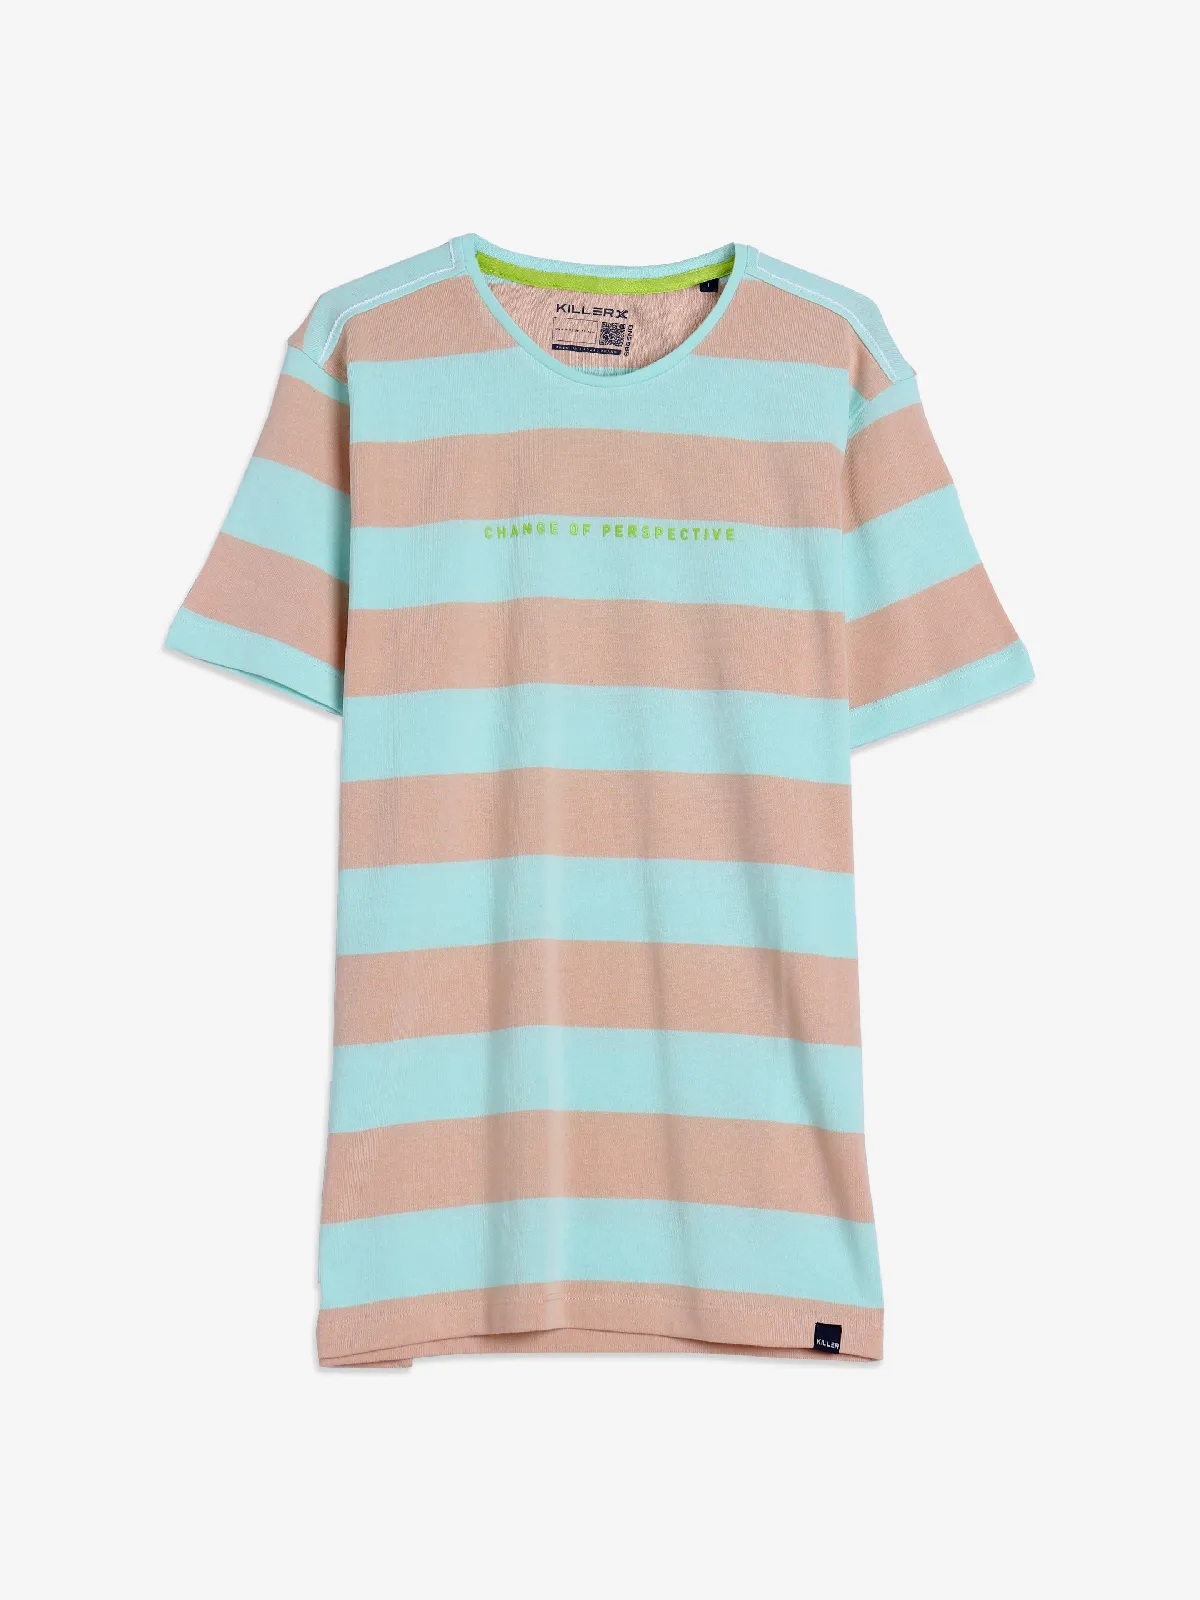 Killer peach and green stripe t-shirt